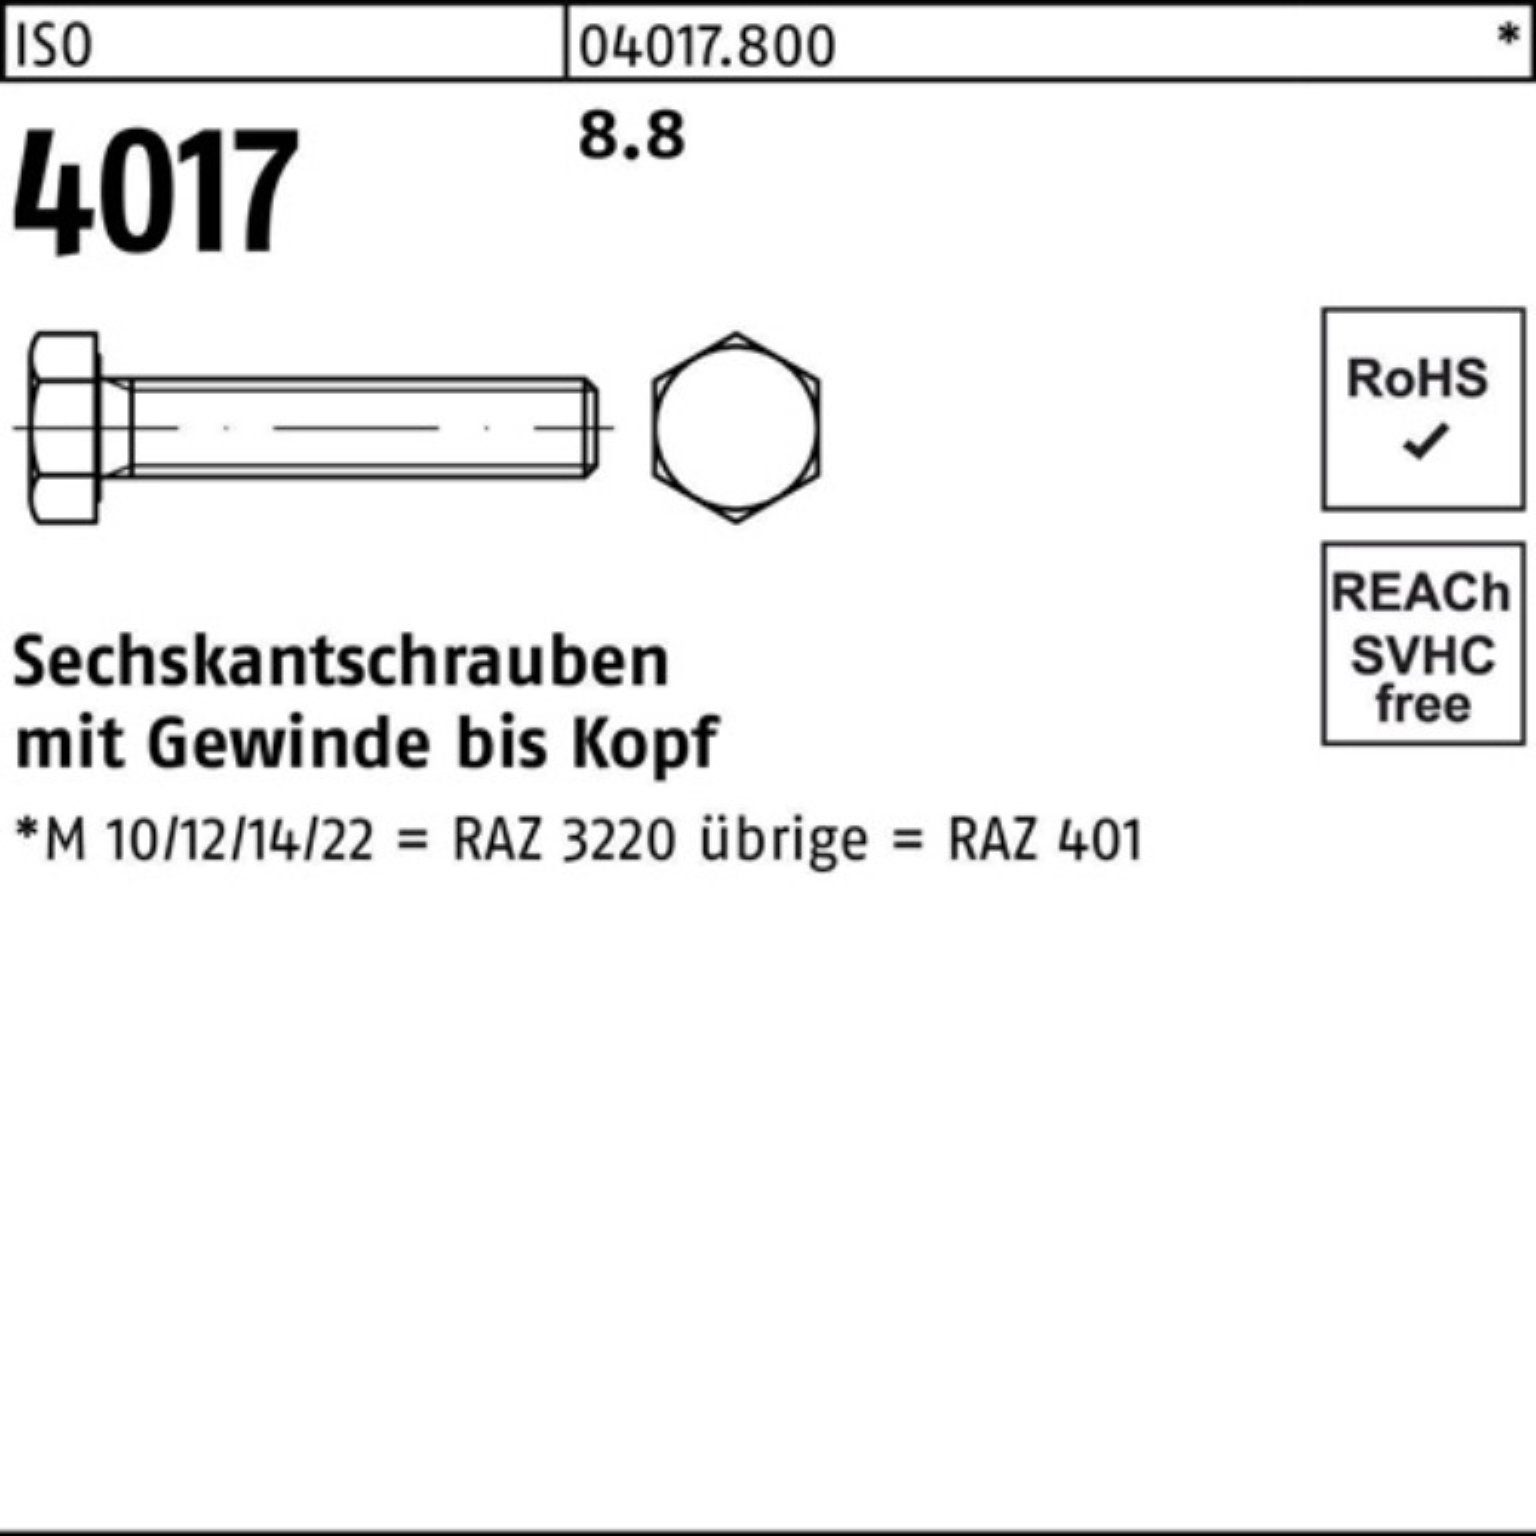 Stück Sechskantschraube VG Pack 280 Sechskantschraube 4017 ISO 100er Bufab 1 401 M36x ISO 8.8